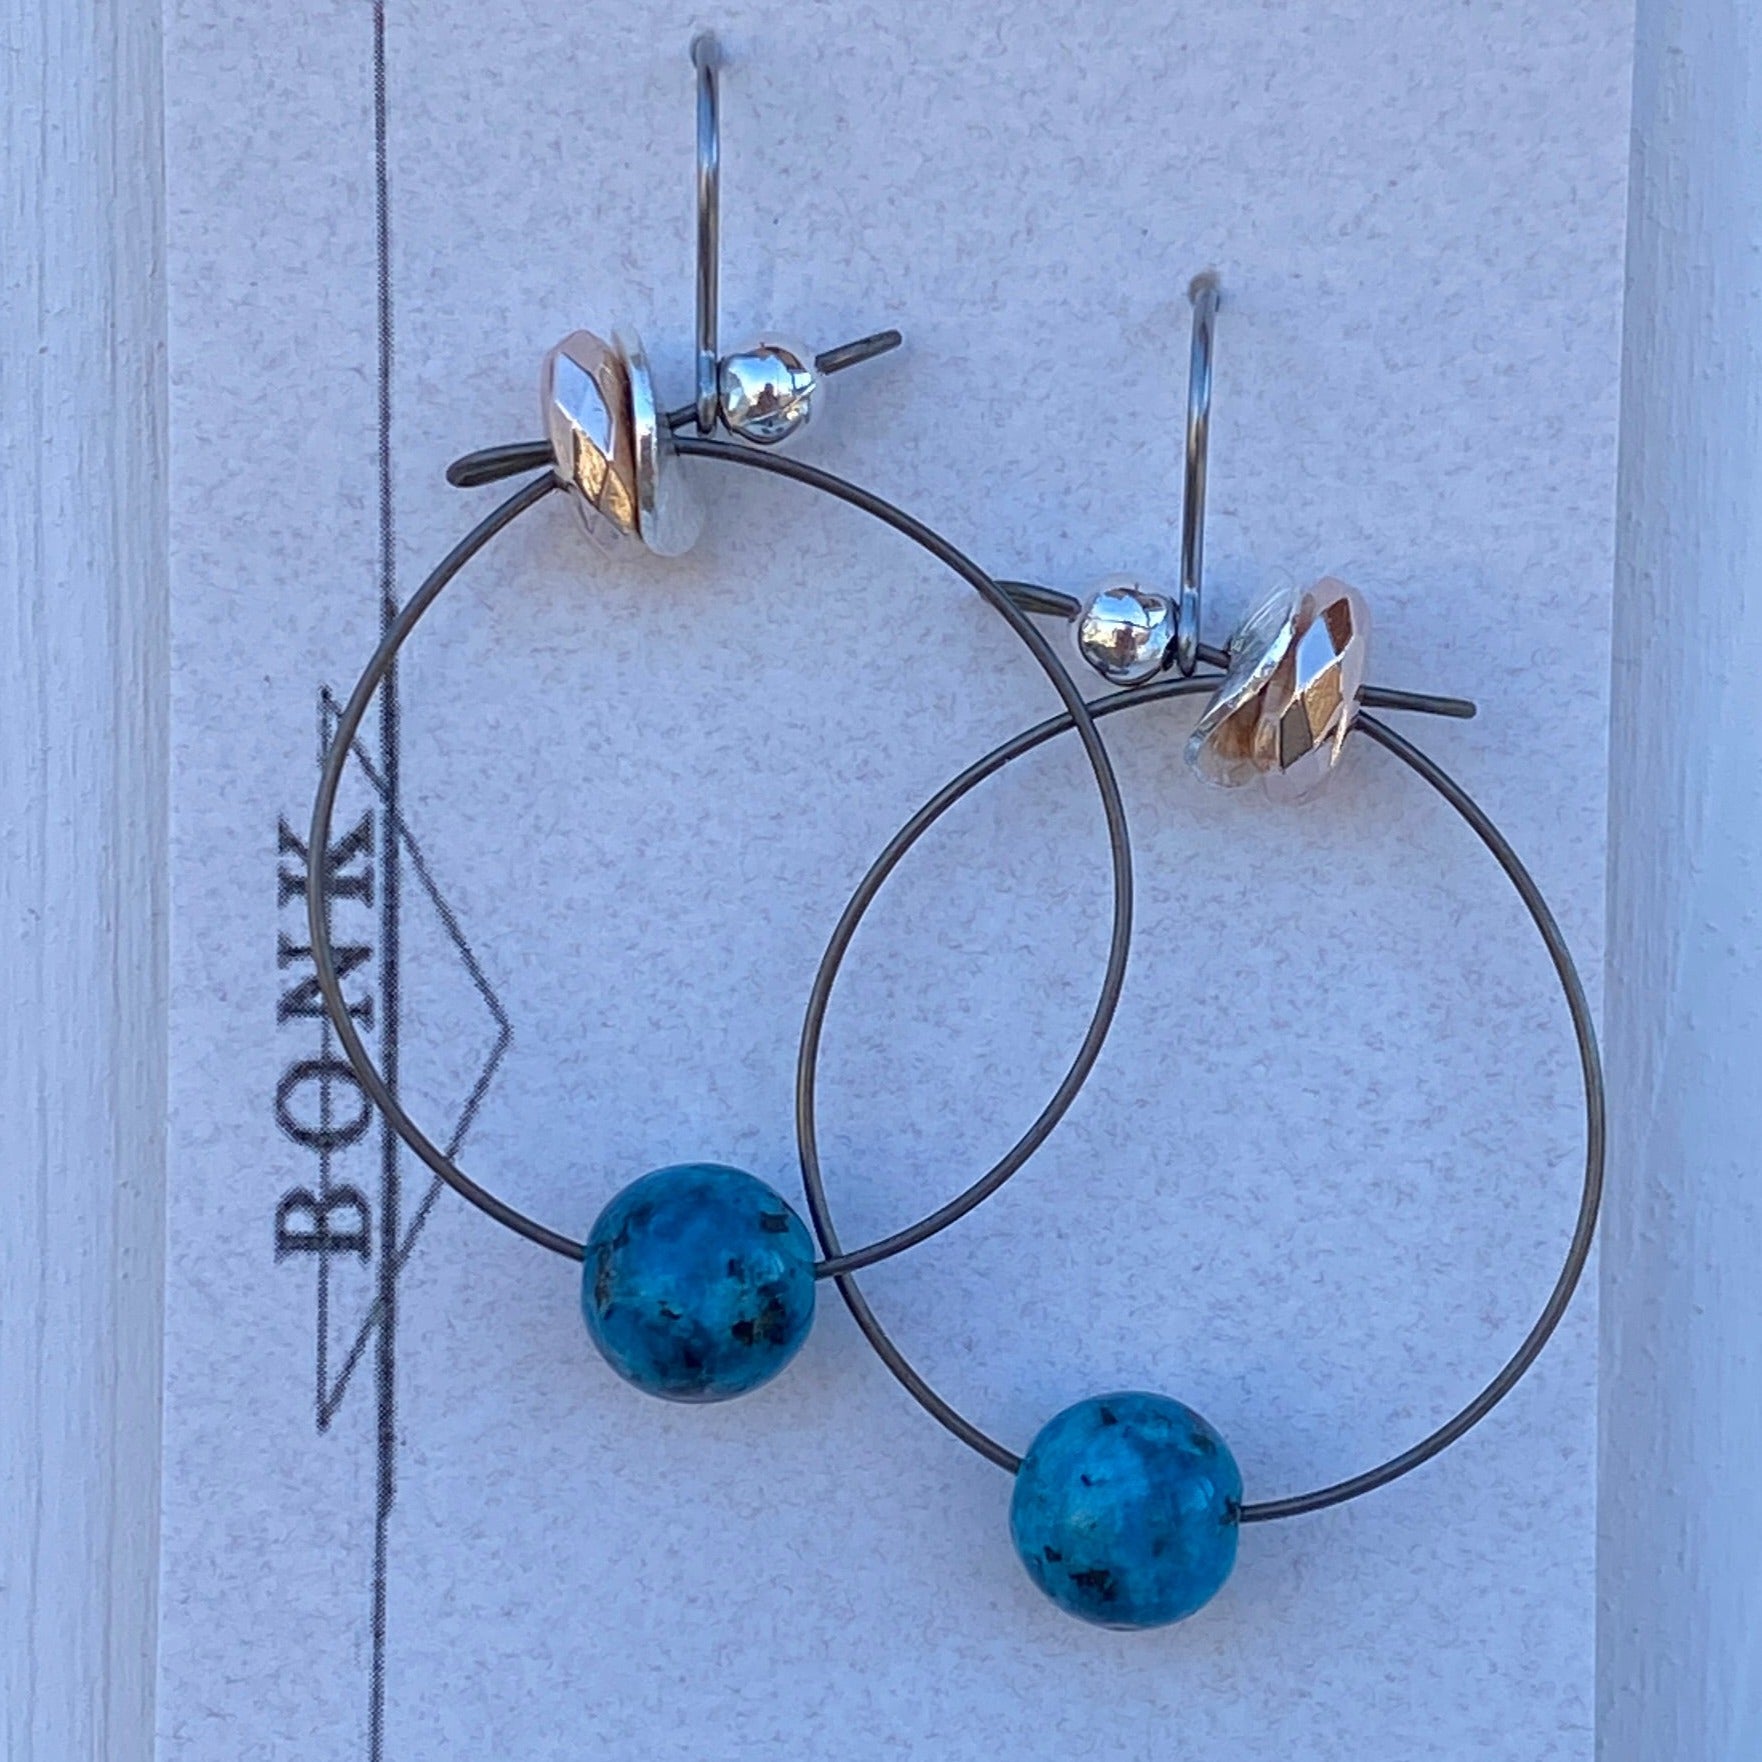 Handmade Earrings by Bonk 